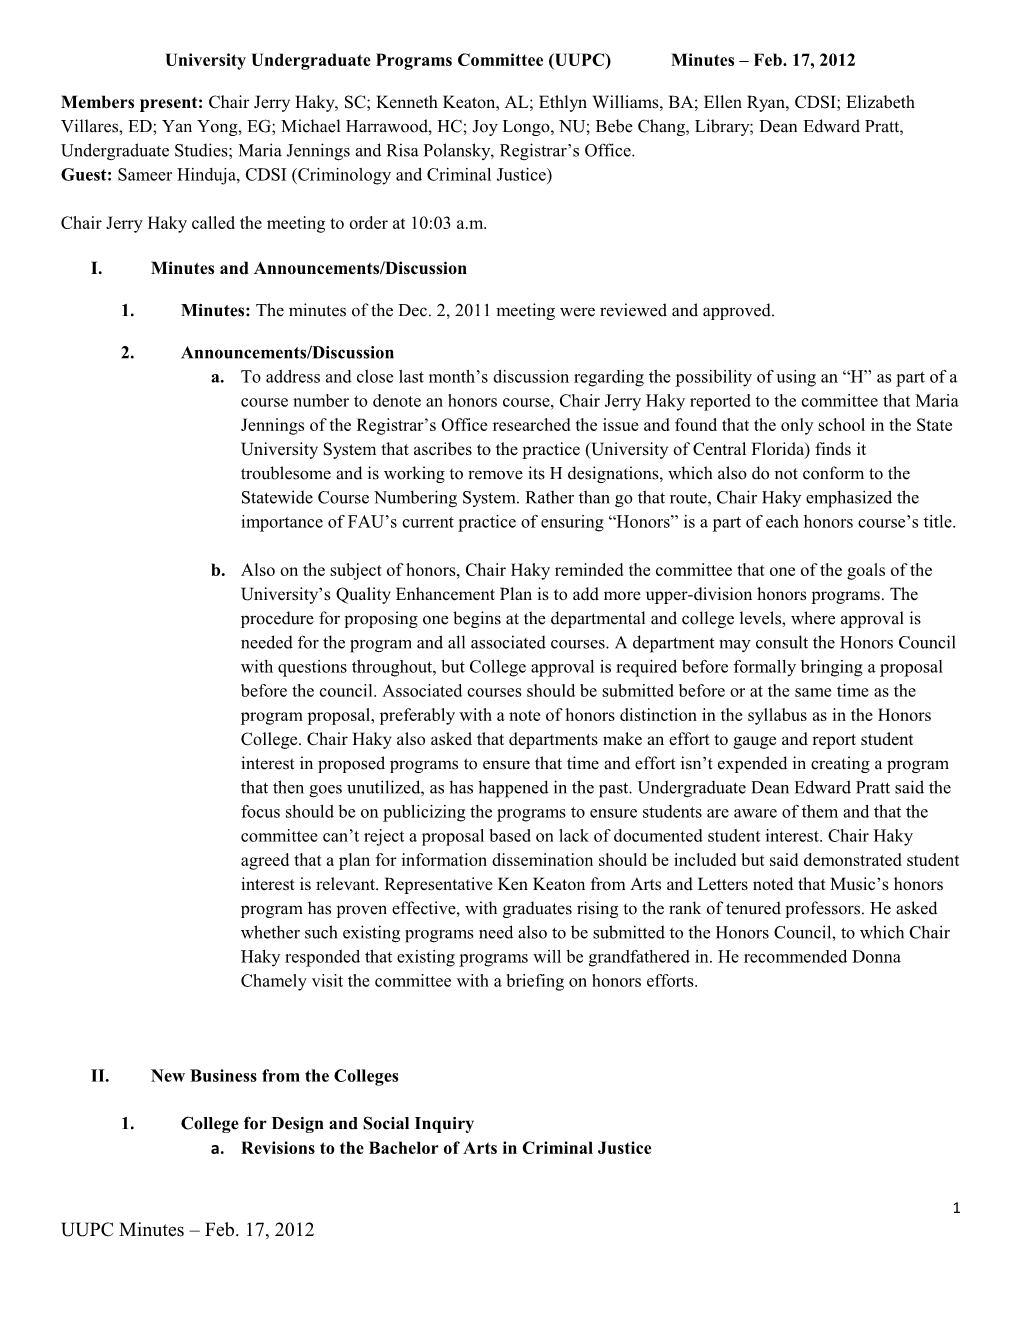 University Undergraduate Programs Committee (UUPC) Minutes Feb. 17, 2012